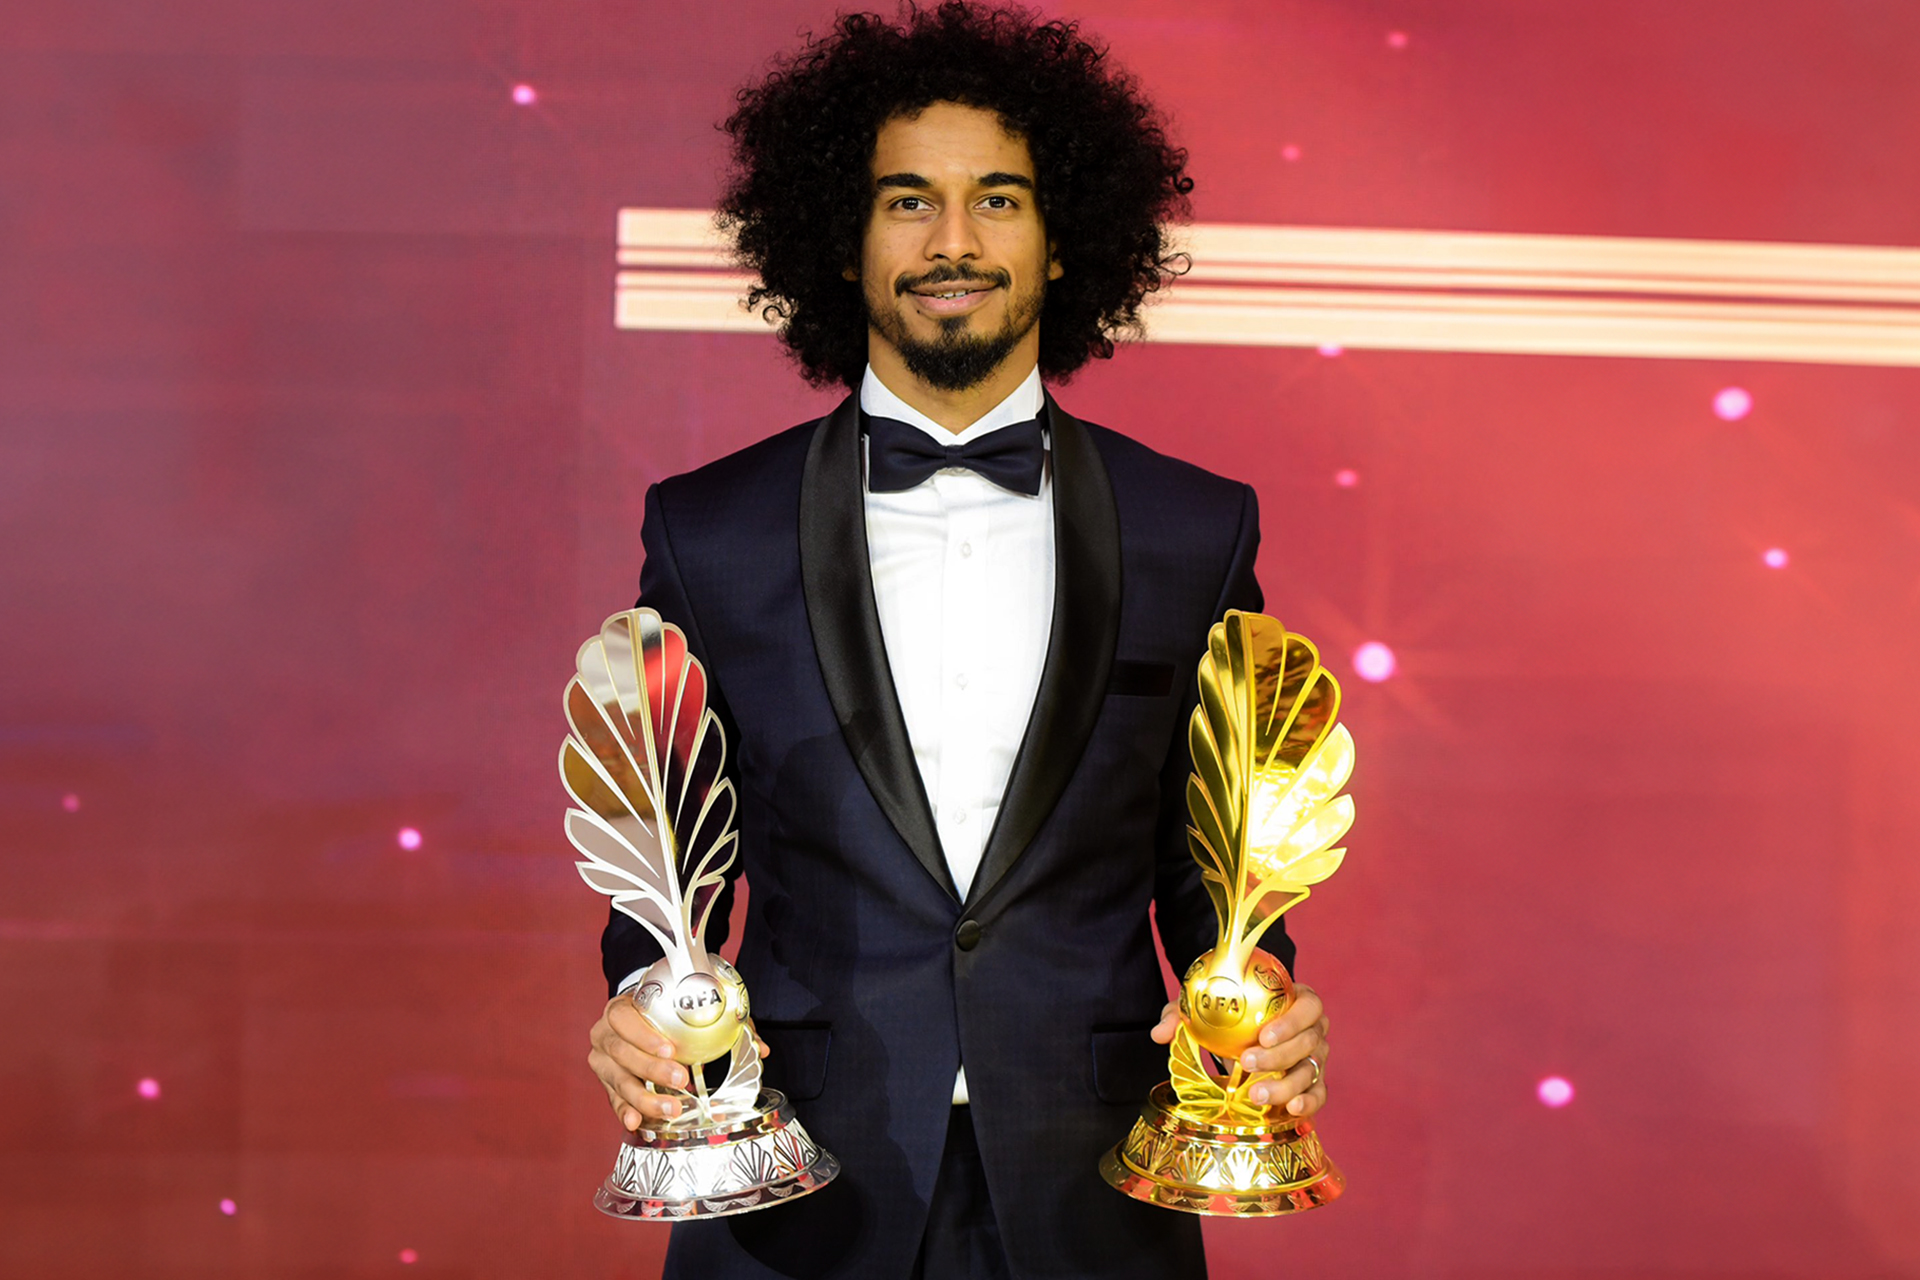 أكرم عفيف يتوّج بجائزة أفضل لاعب ومارتينيز أفضل مدرب بالدوري القطري | رياضة